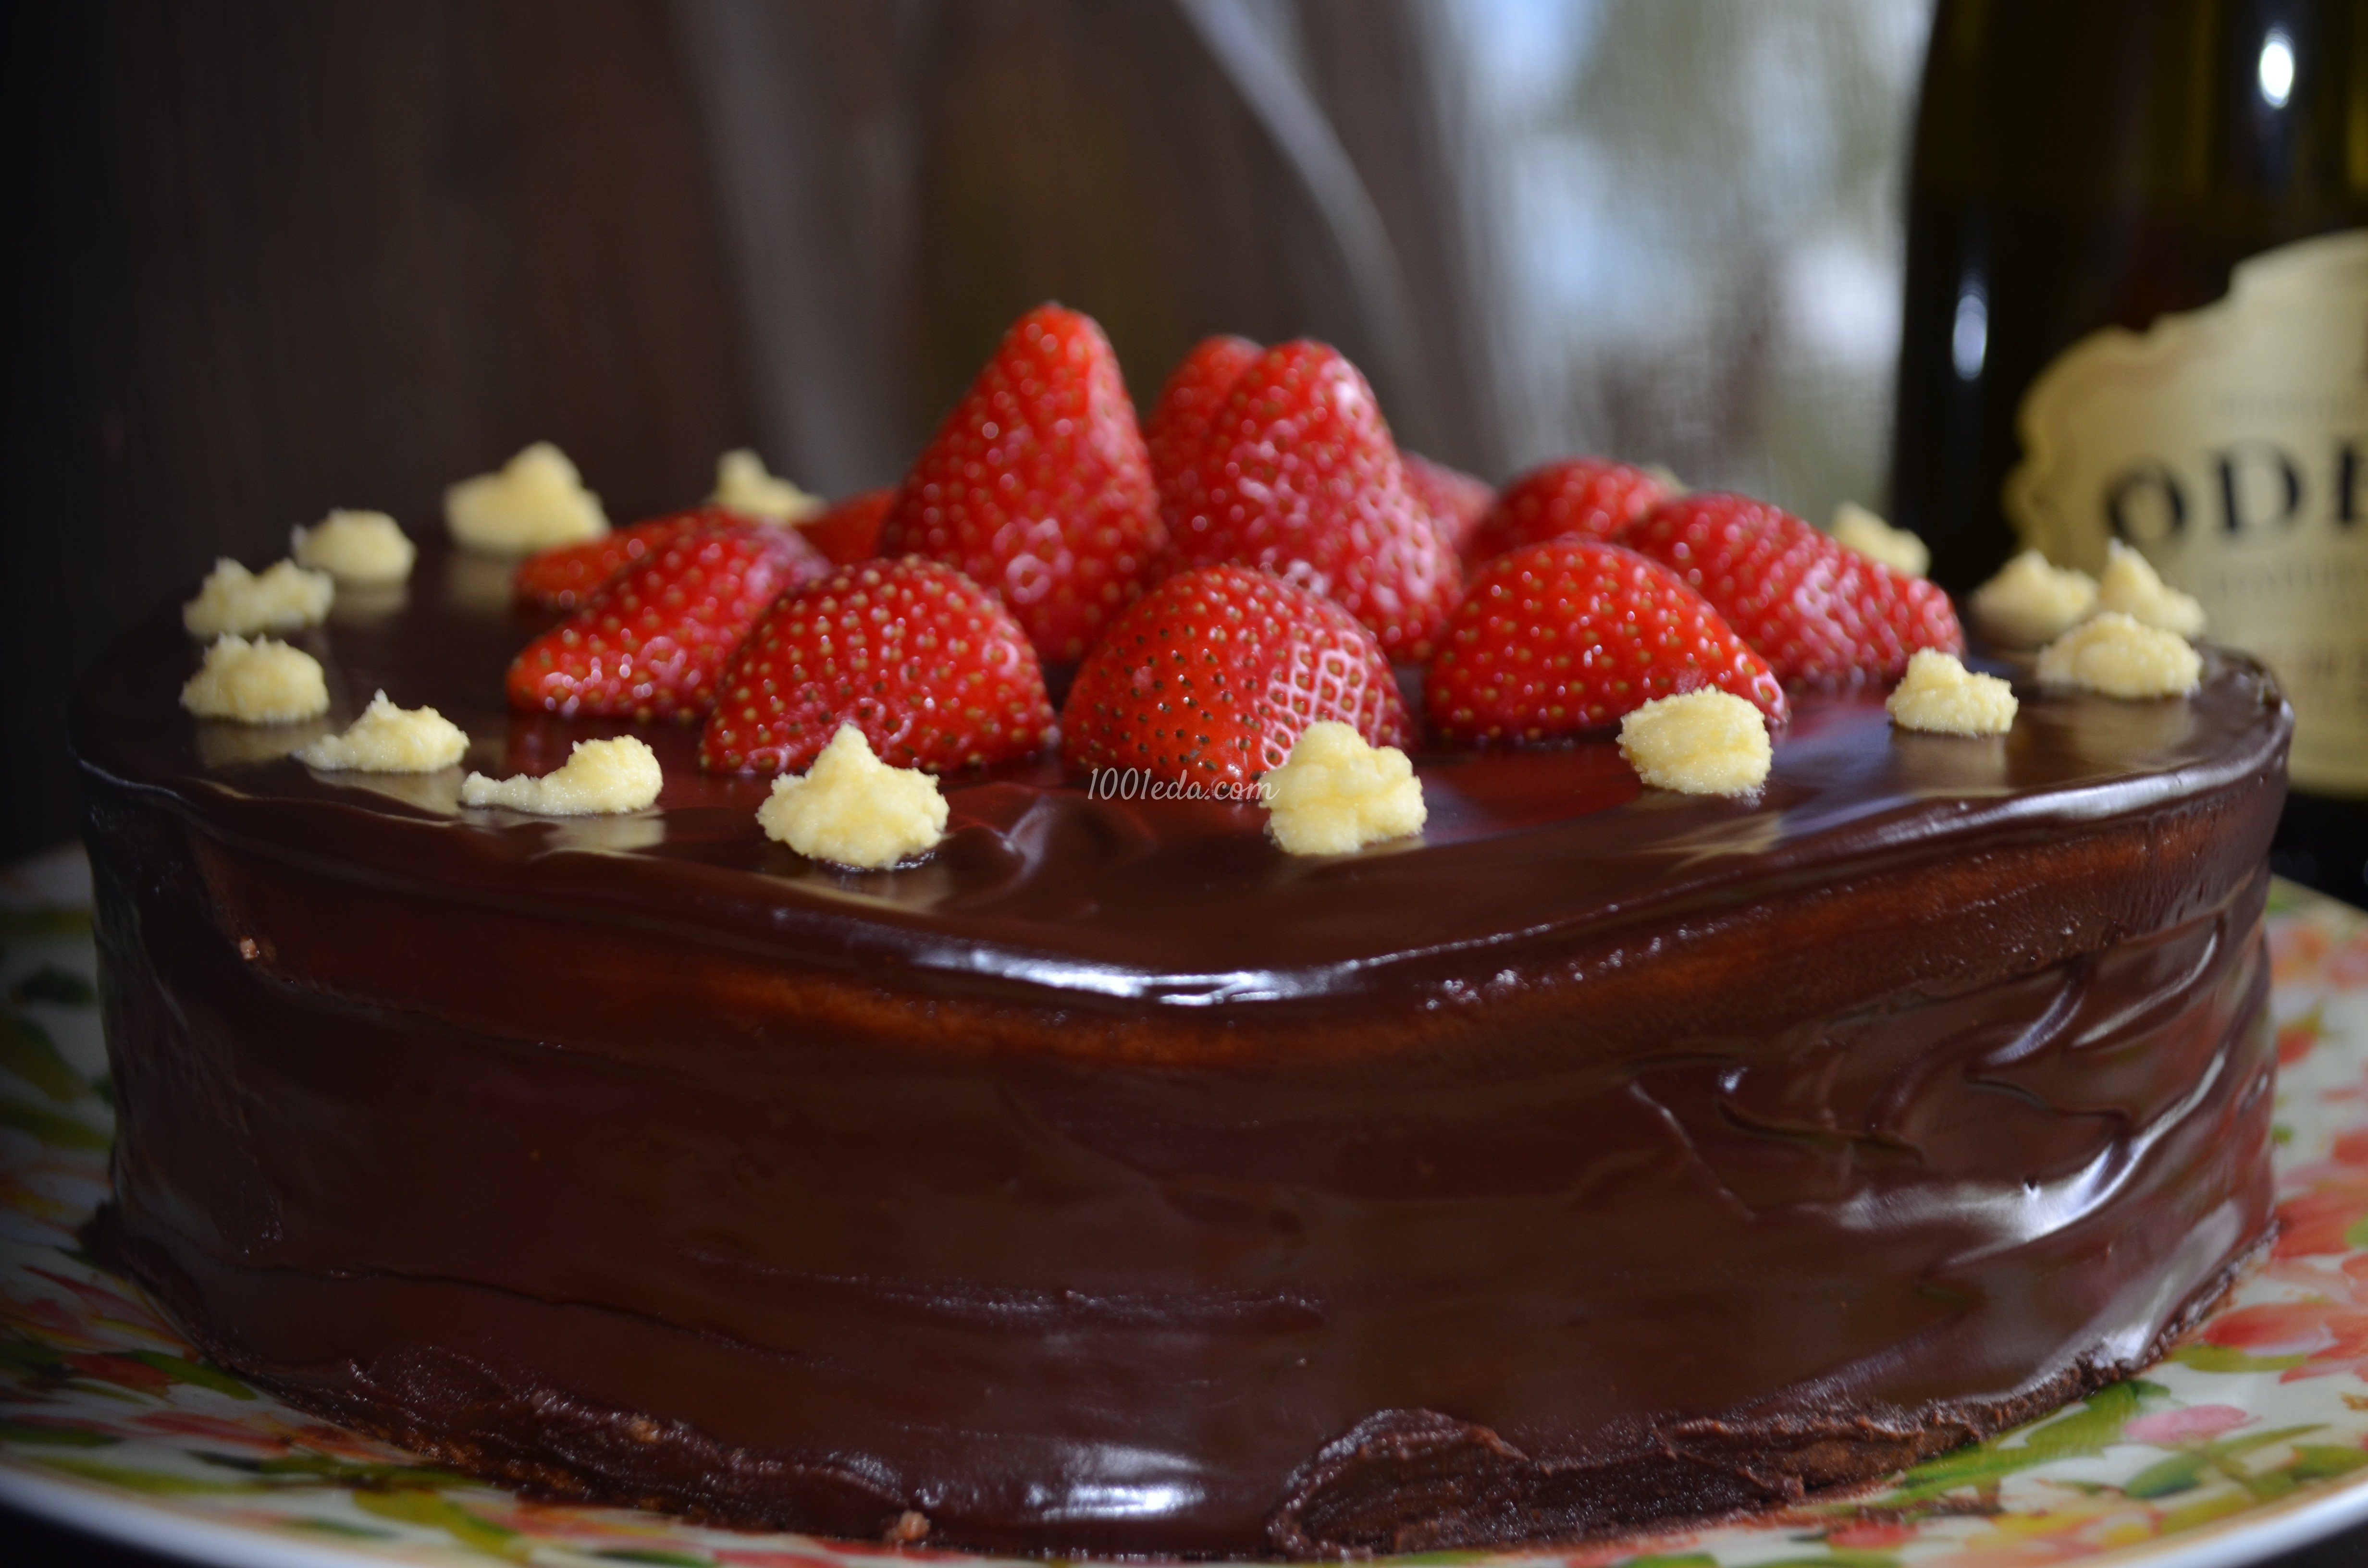 Шоколадный торт со сливками и клубникой